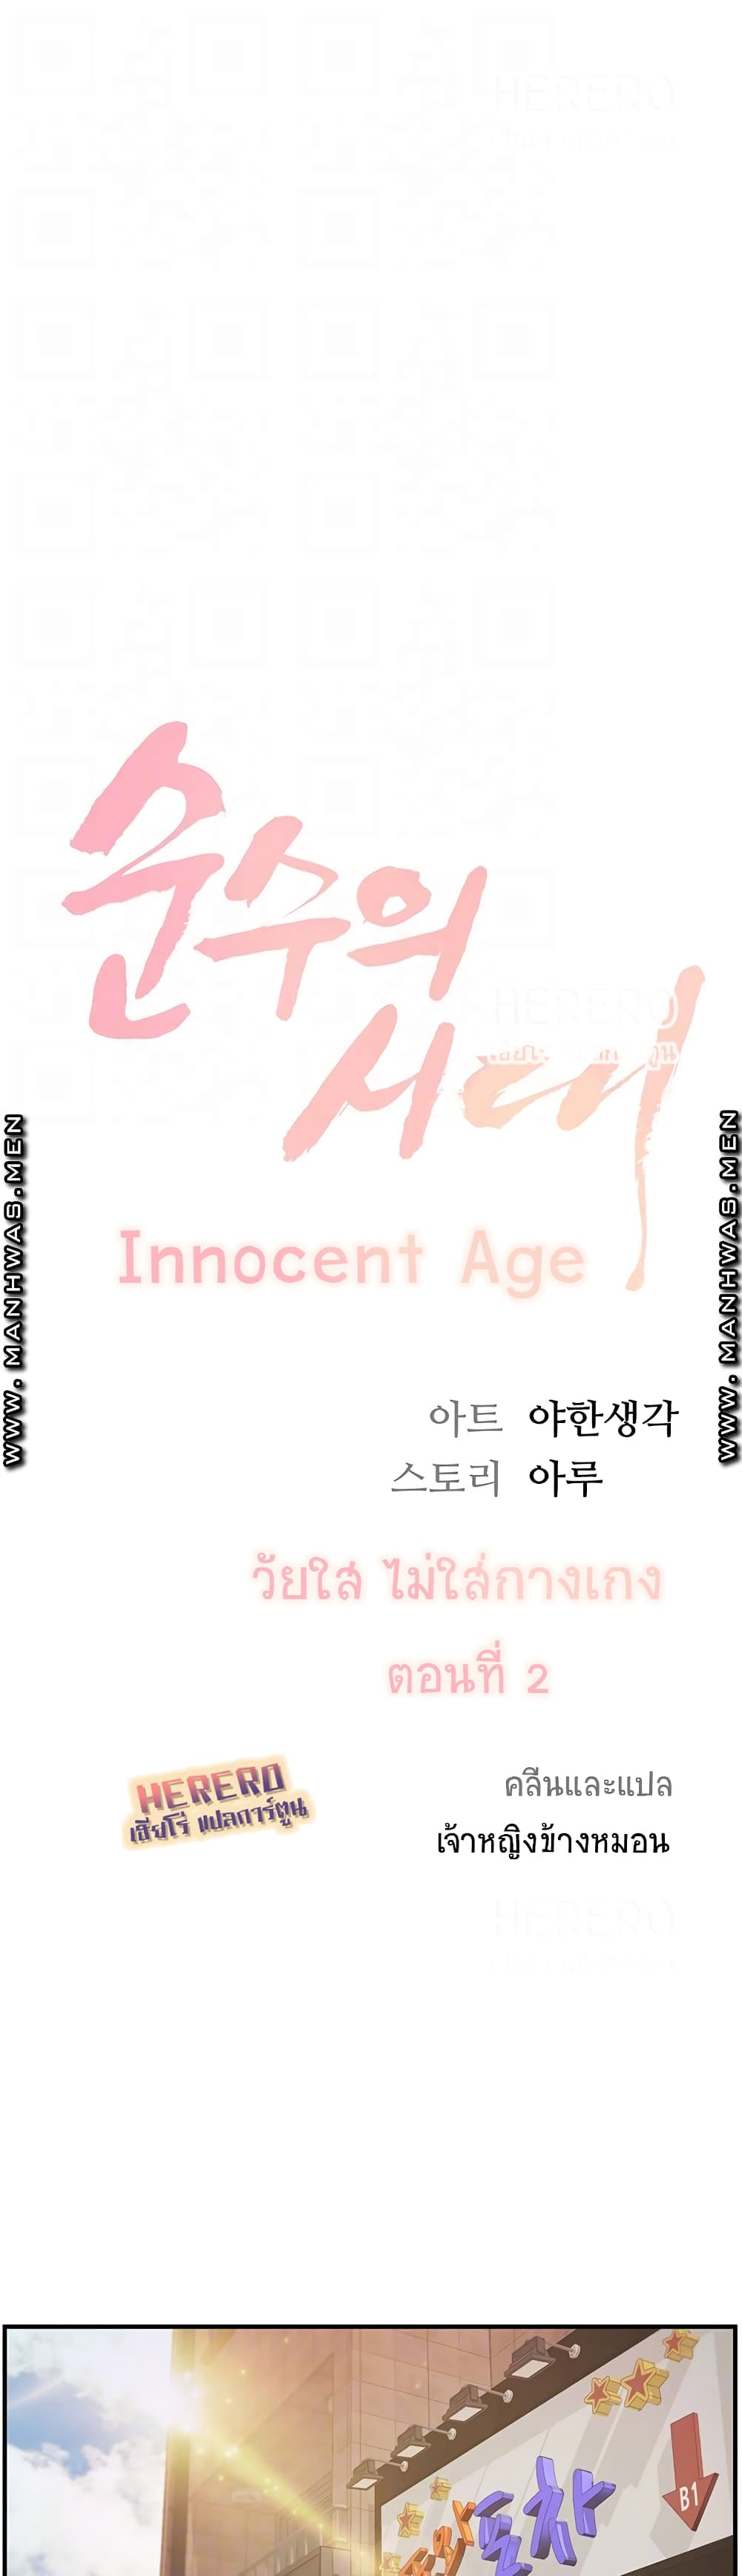 Innocent Age 2 (4)